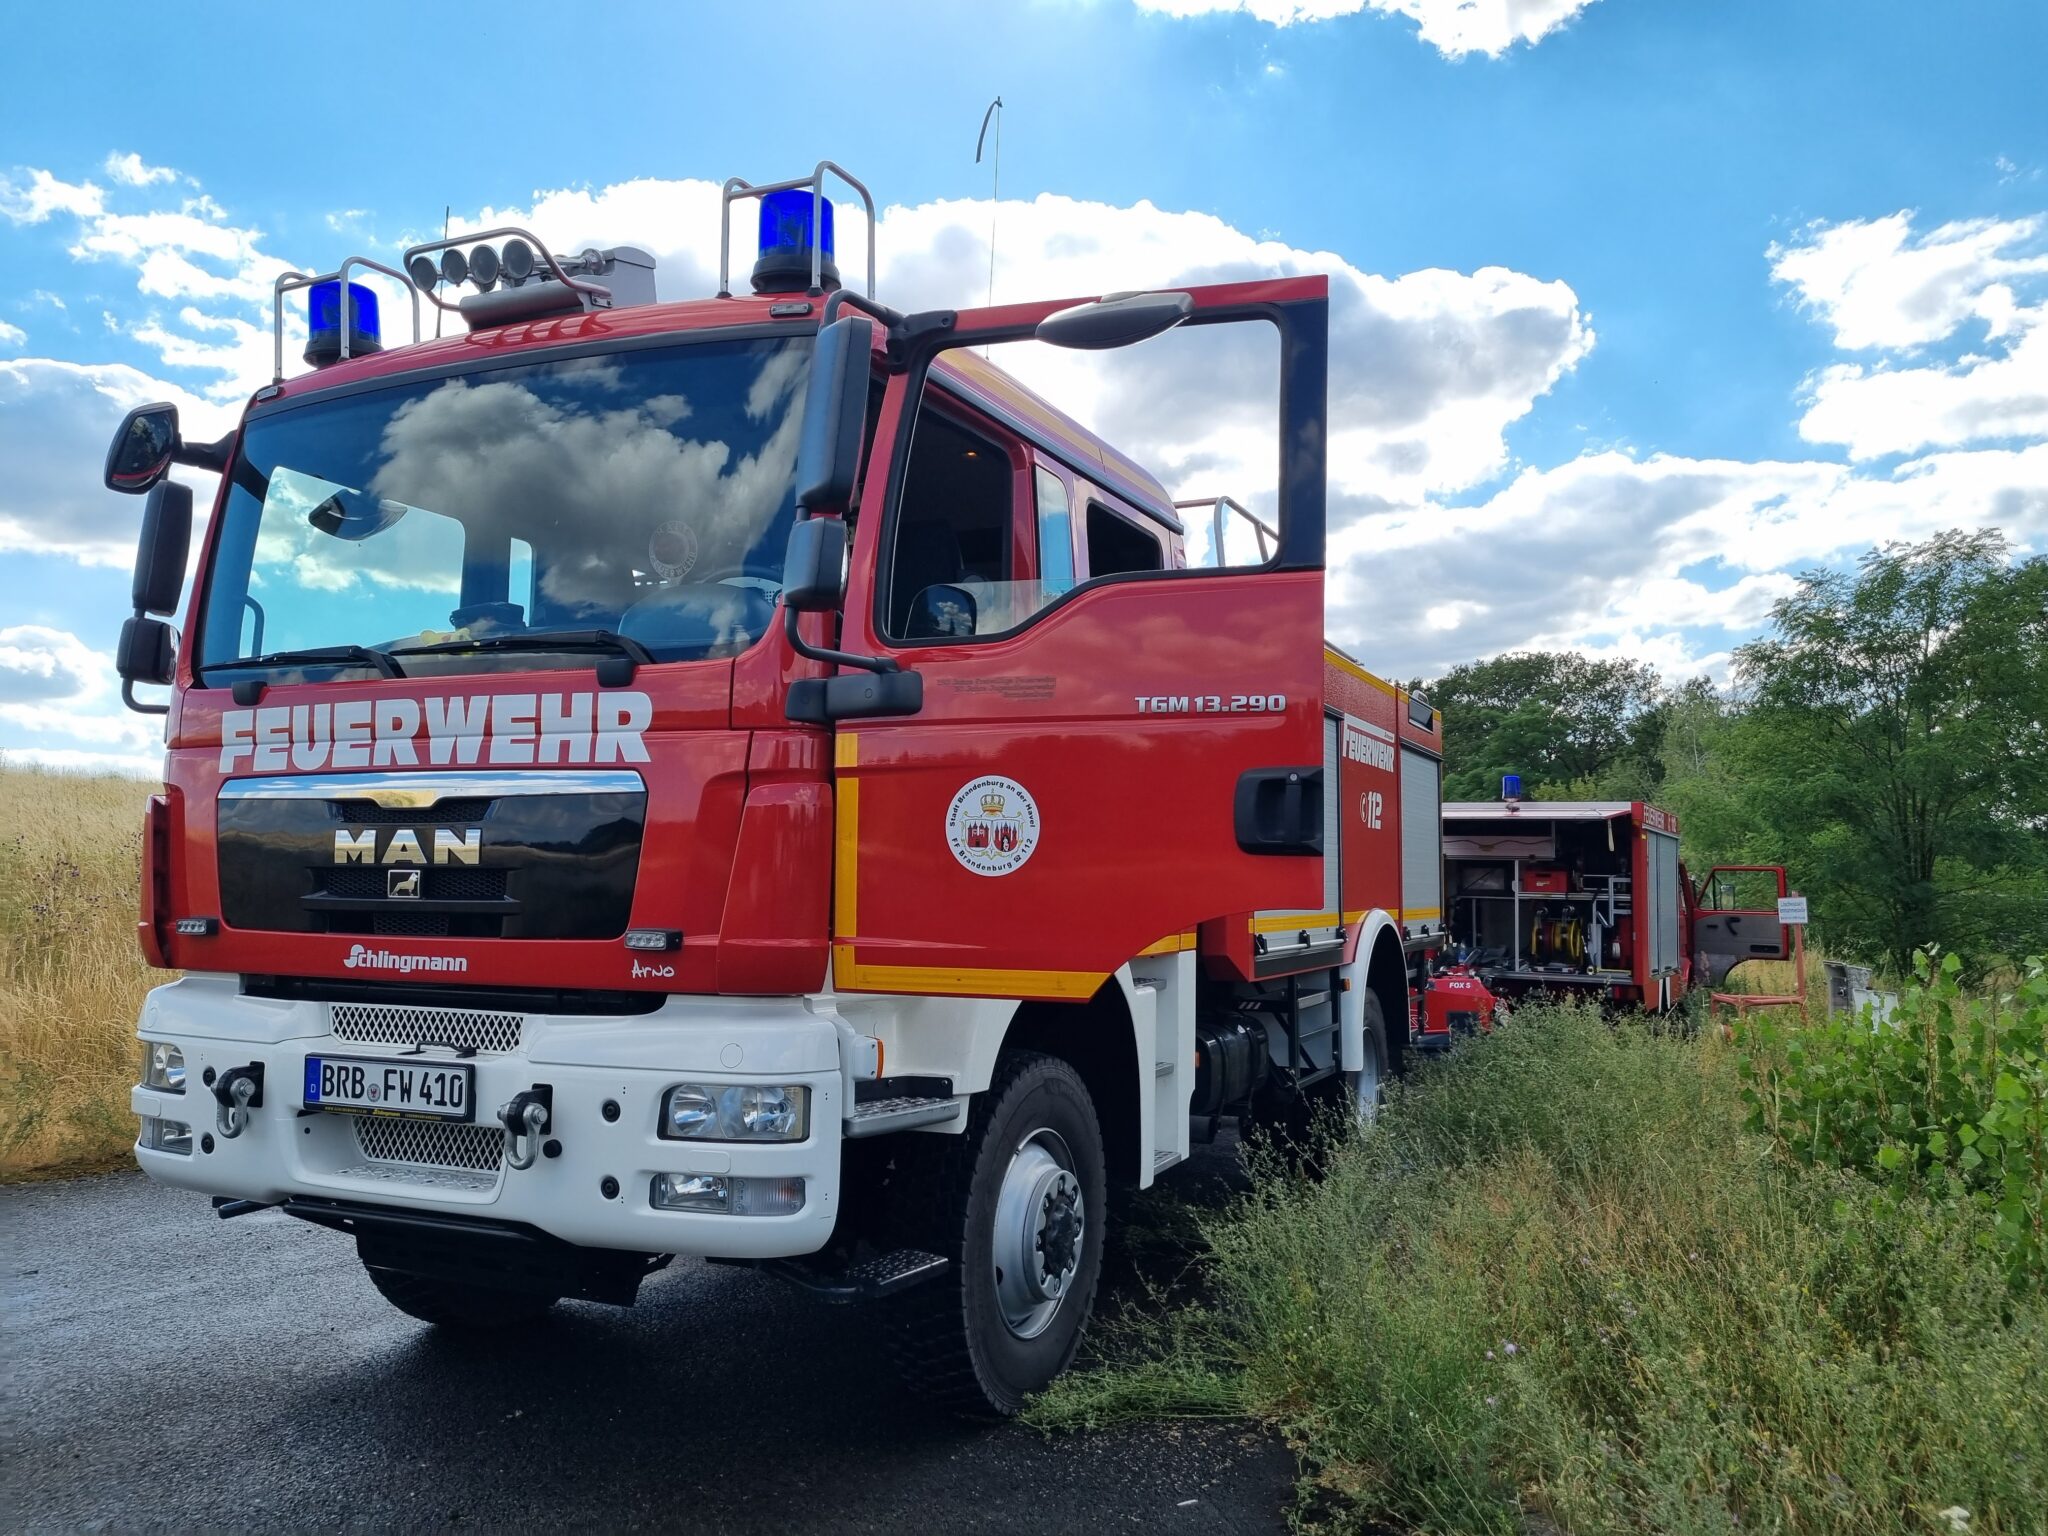 (c) Feuerwehr-fohrde.de